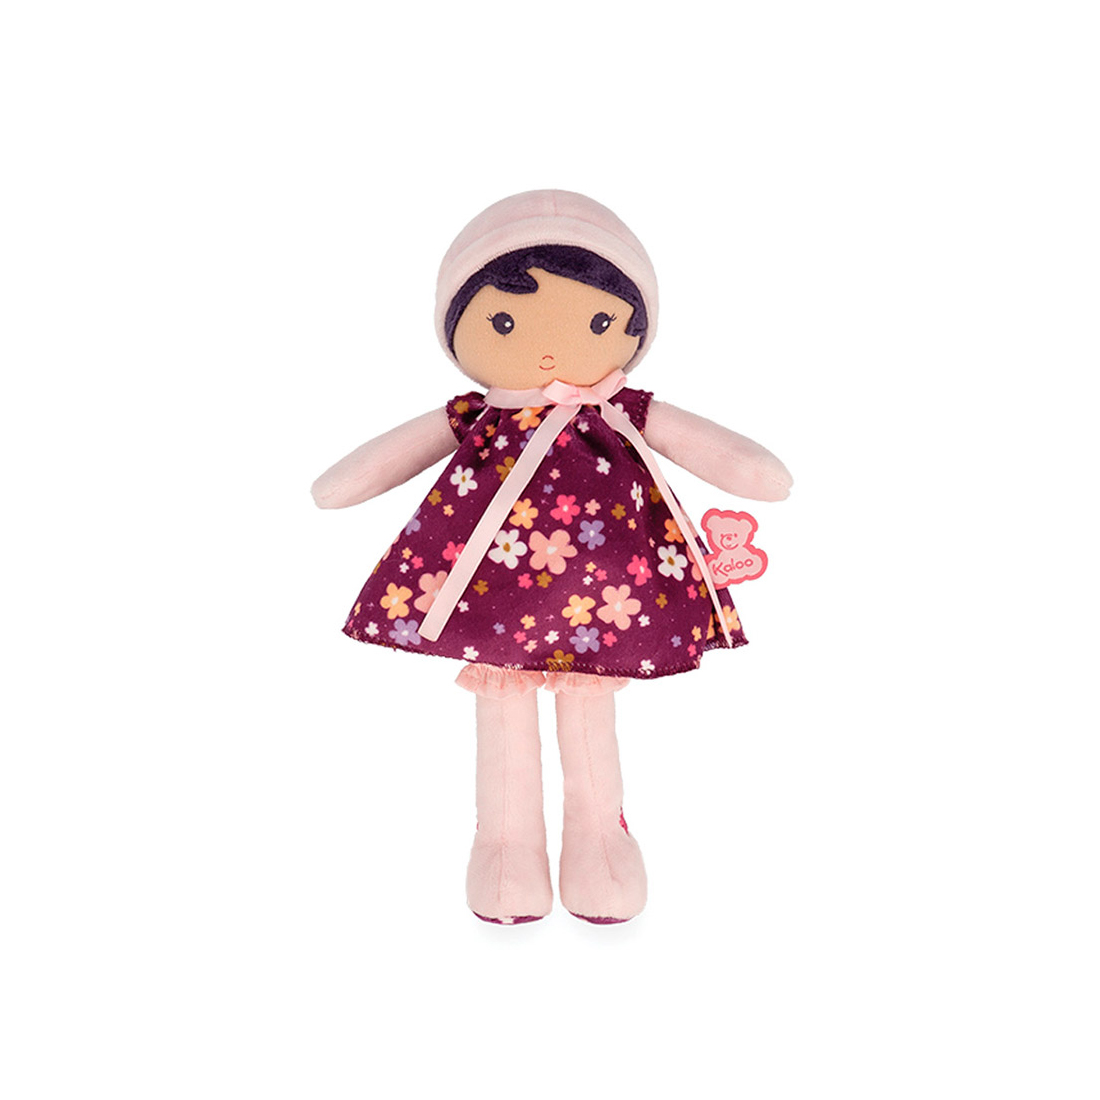 Текстильная кукла Kaloo "Violette", в пурпурном платье, серия "Tendresse de Kaloo", 25 см - фото №1